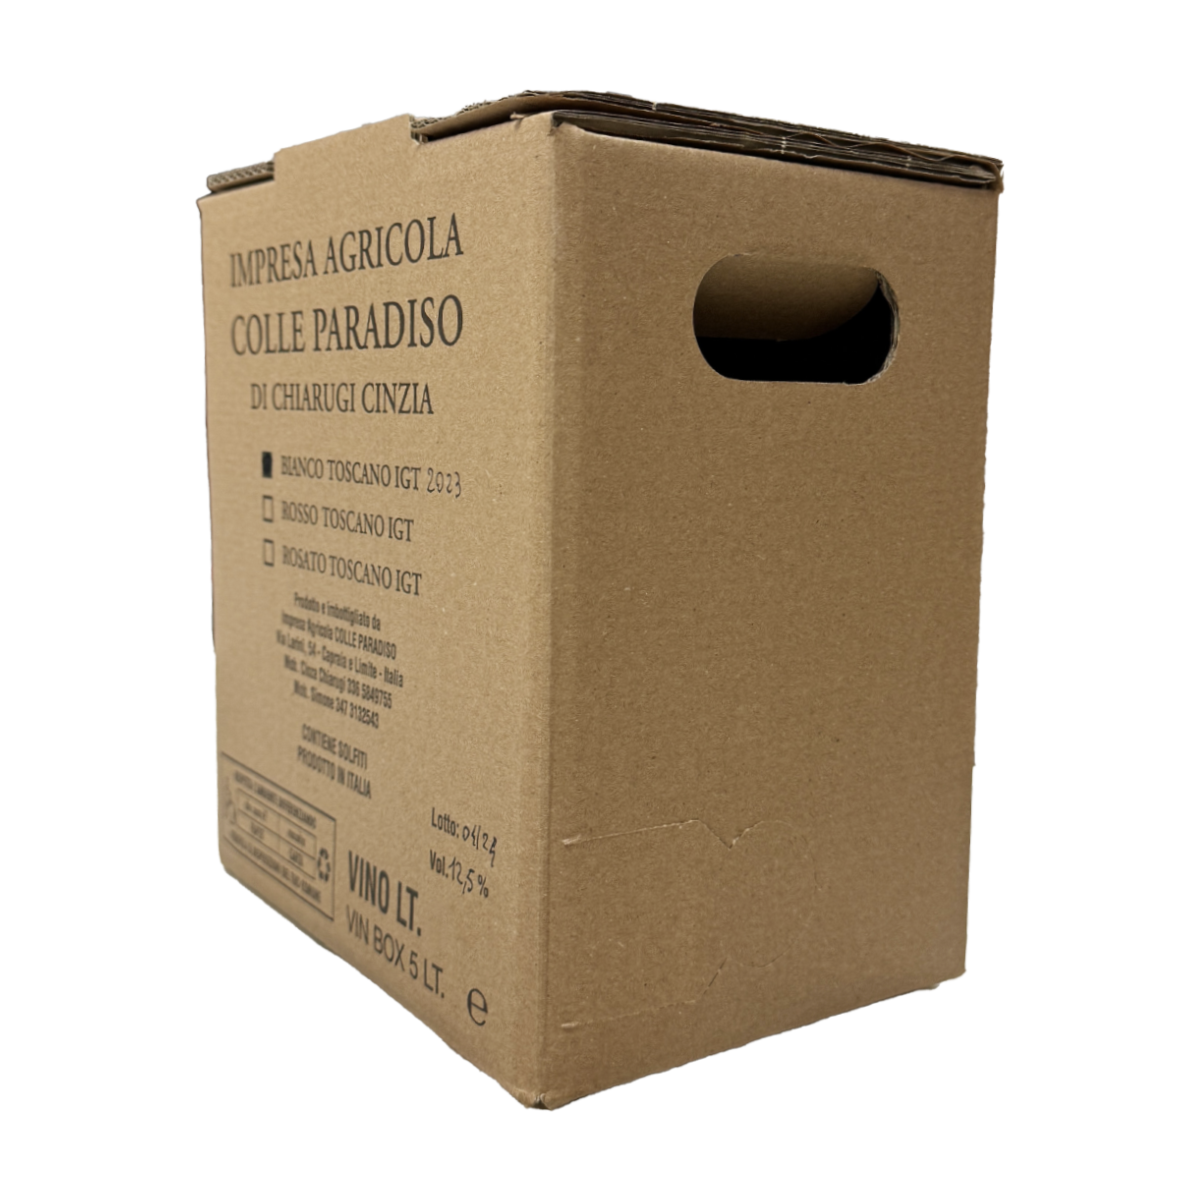 Bag In Box - Colle ParadisoImpresa Agricola Colle Paradiso